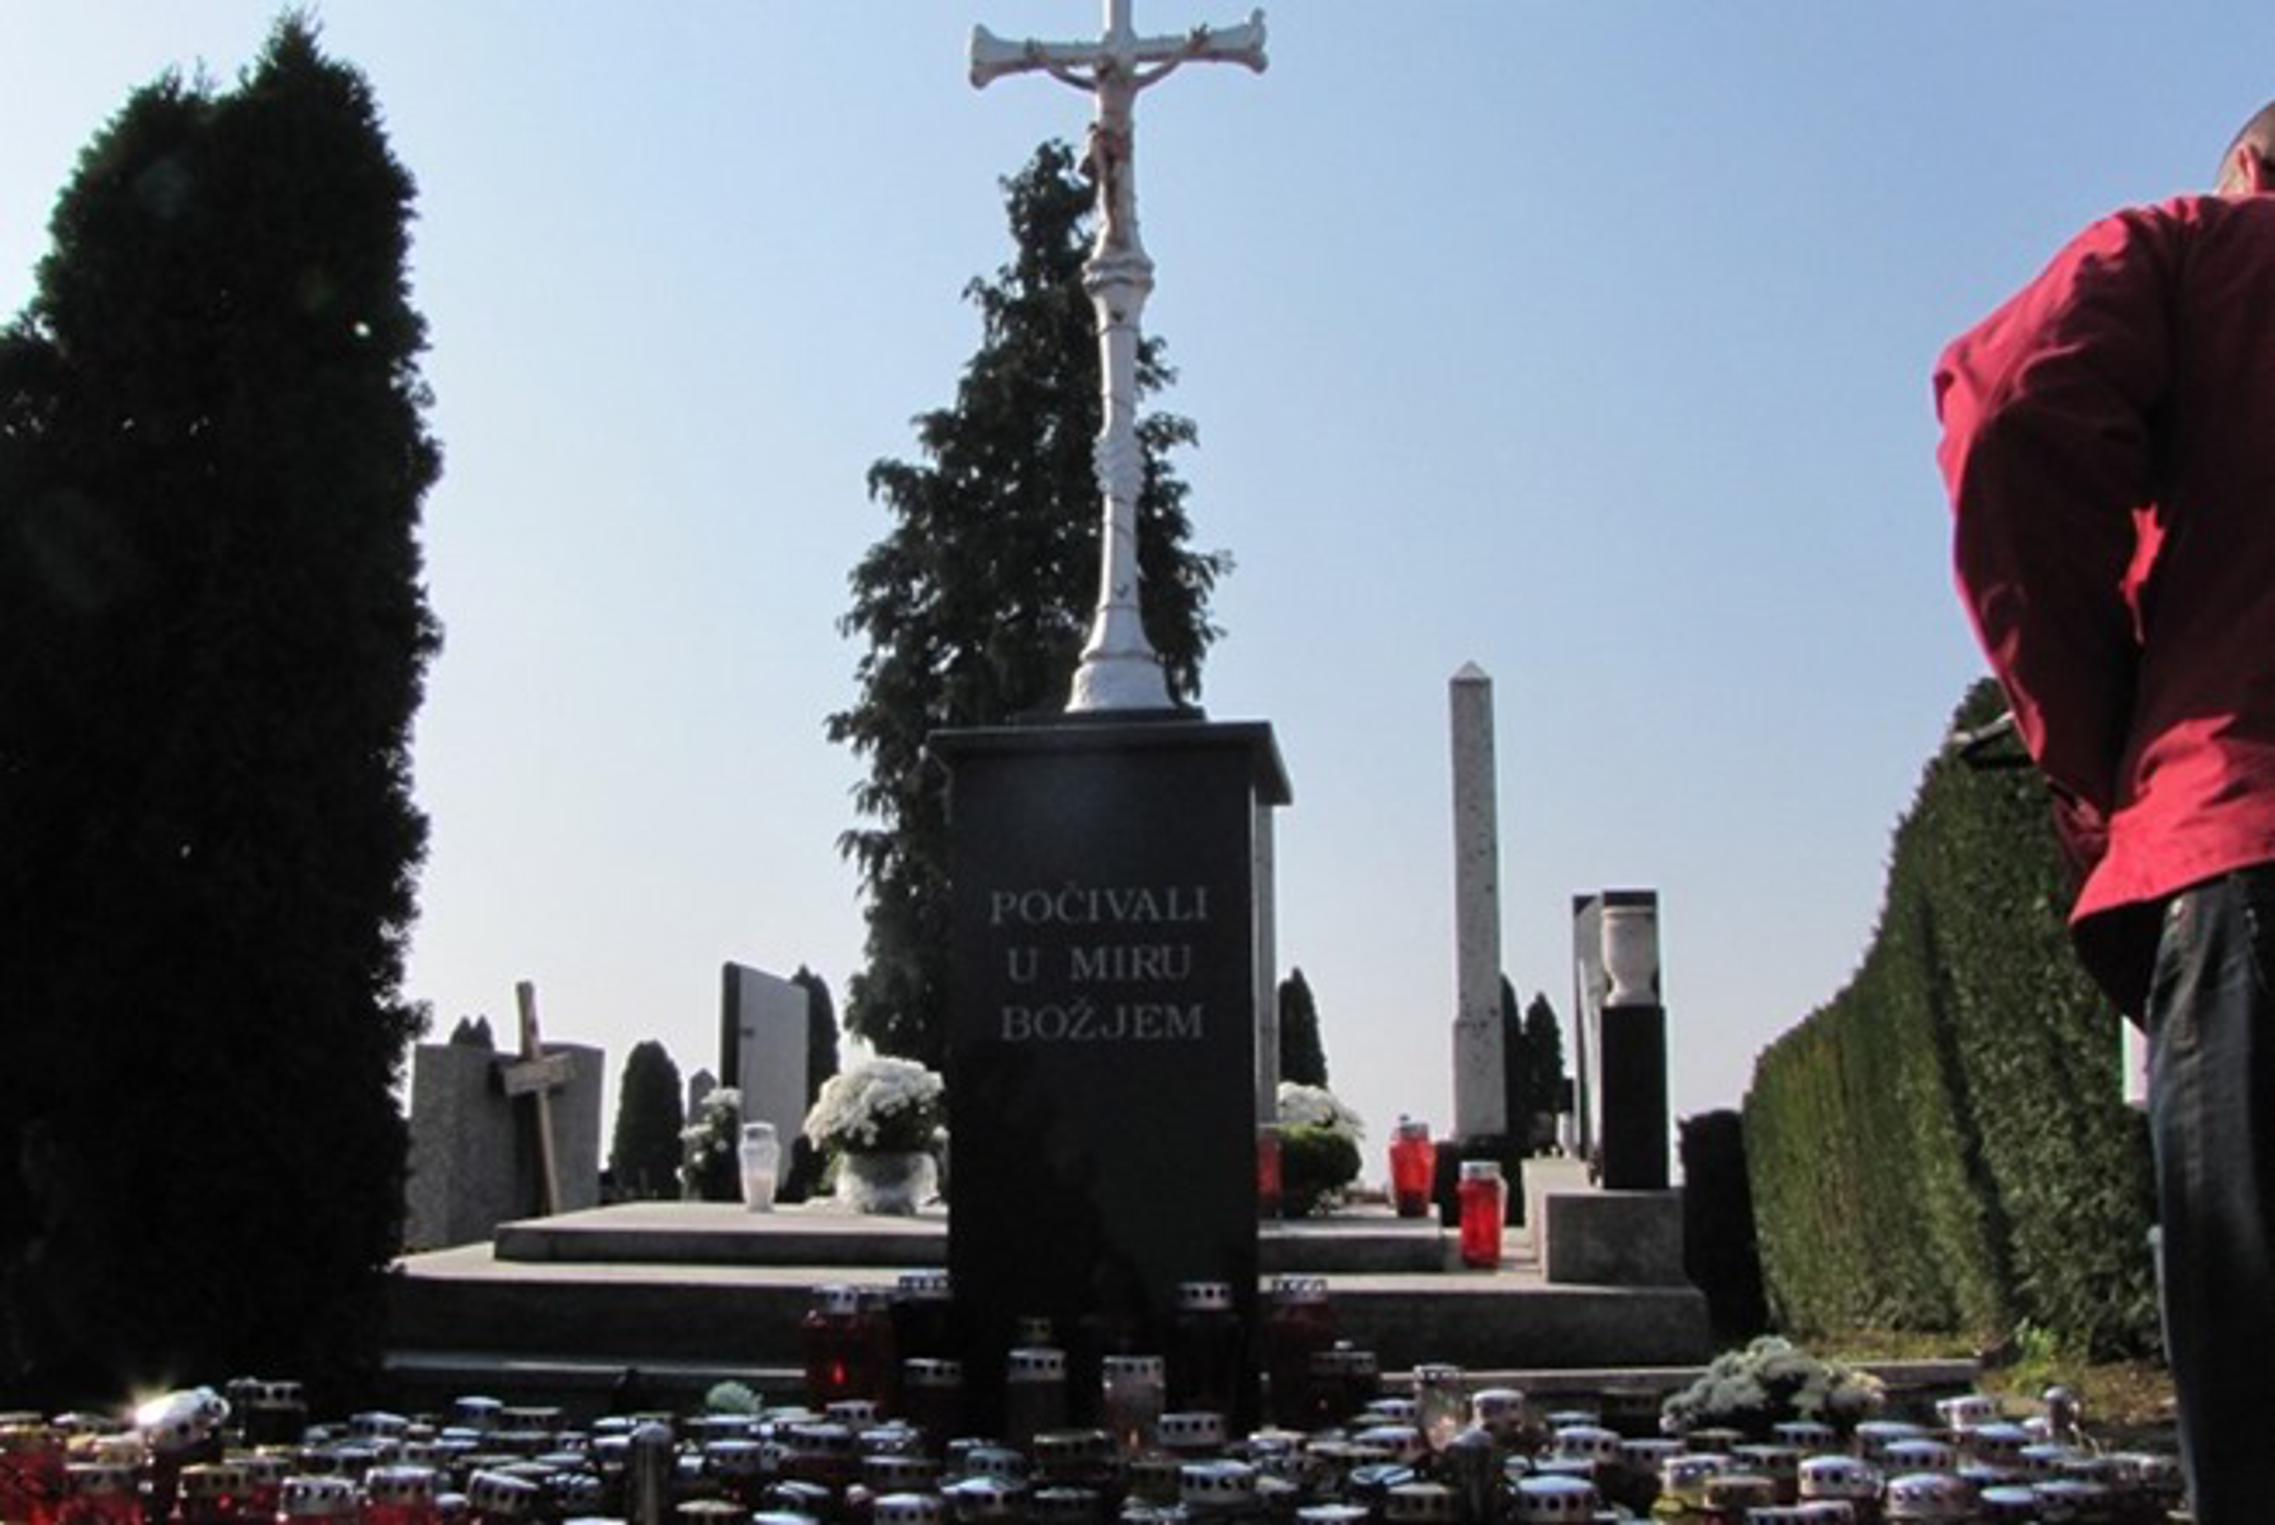 Gradsko groblje Slavonski Brod